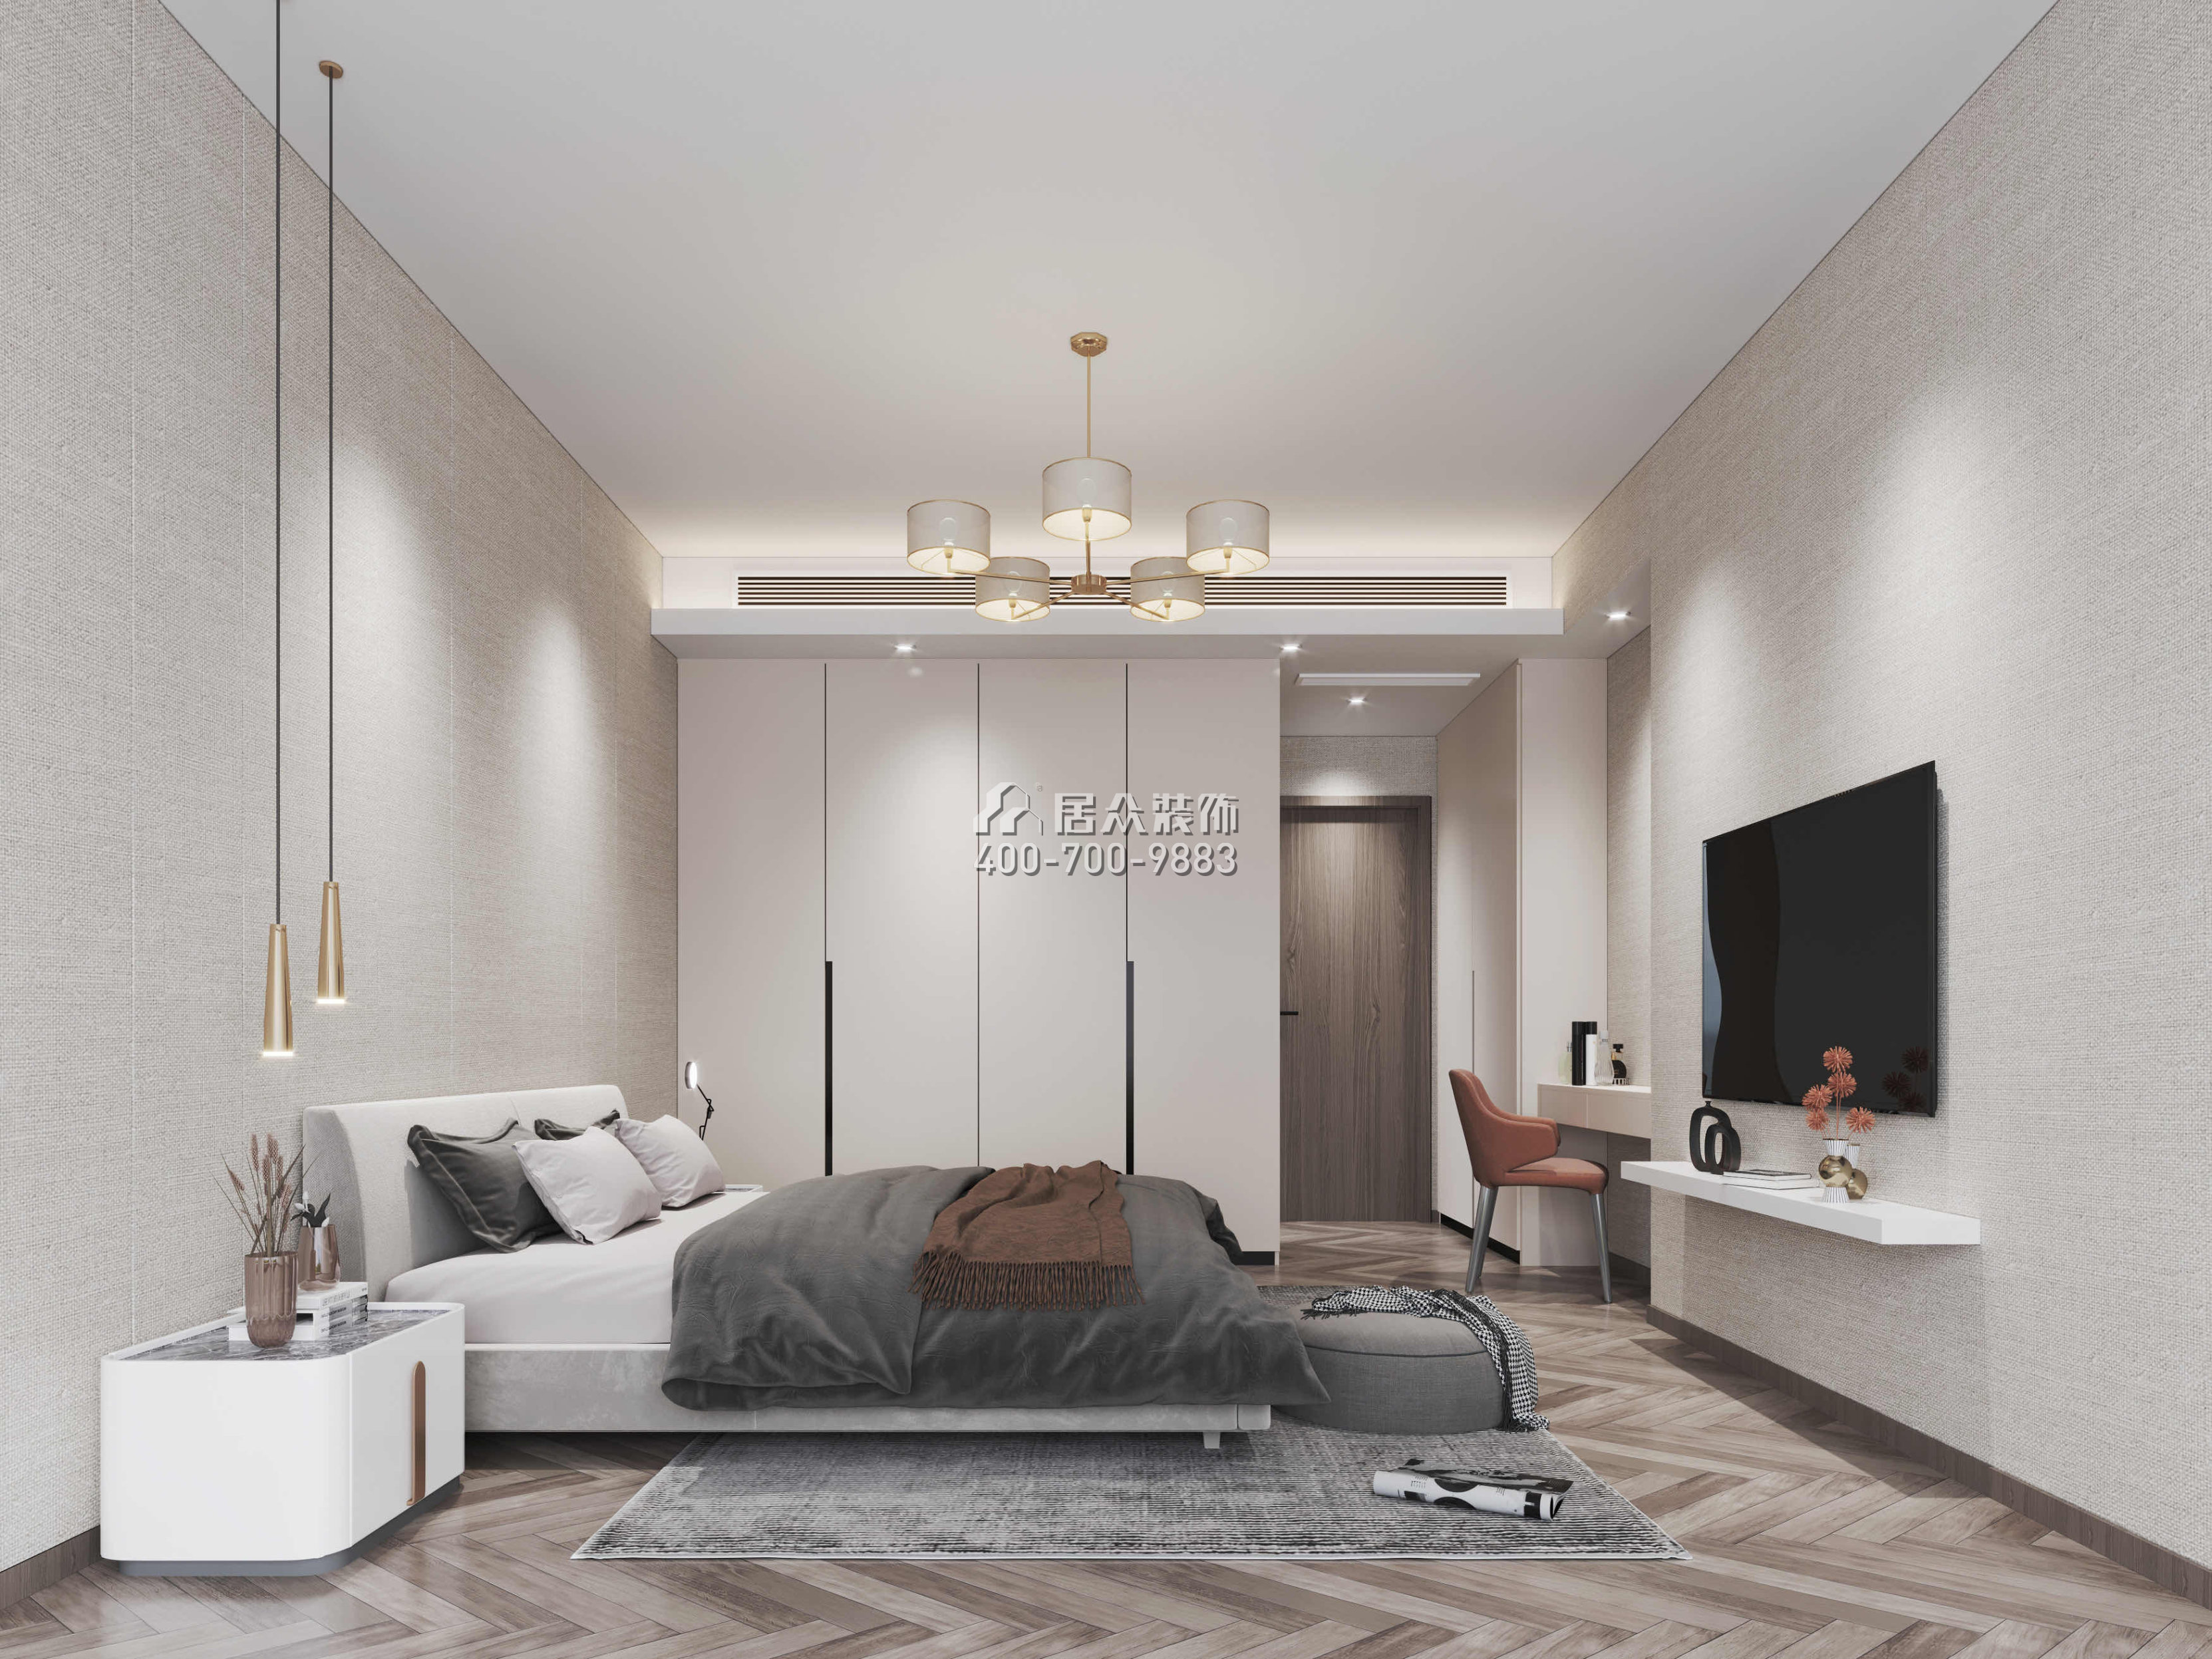 大康福盈门175平方米现代简约风格平层户型卧室装修效果图